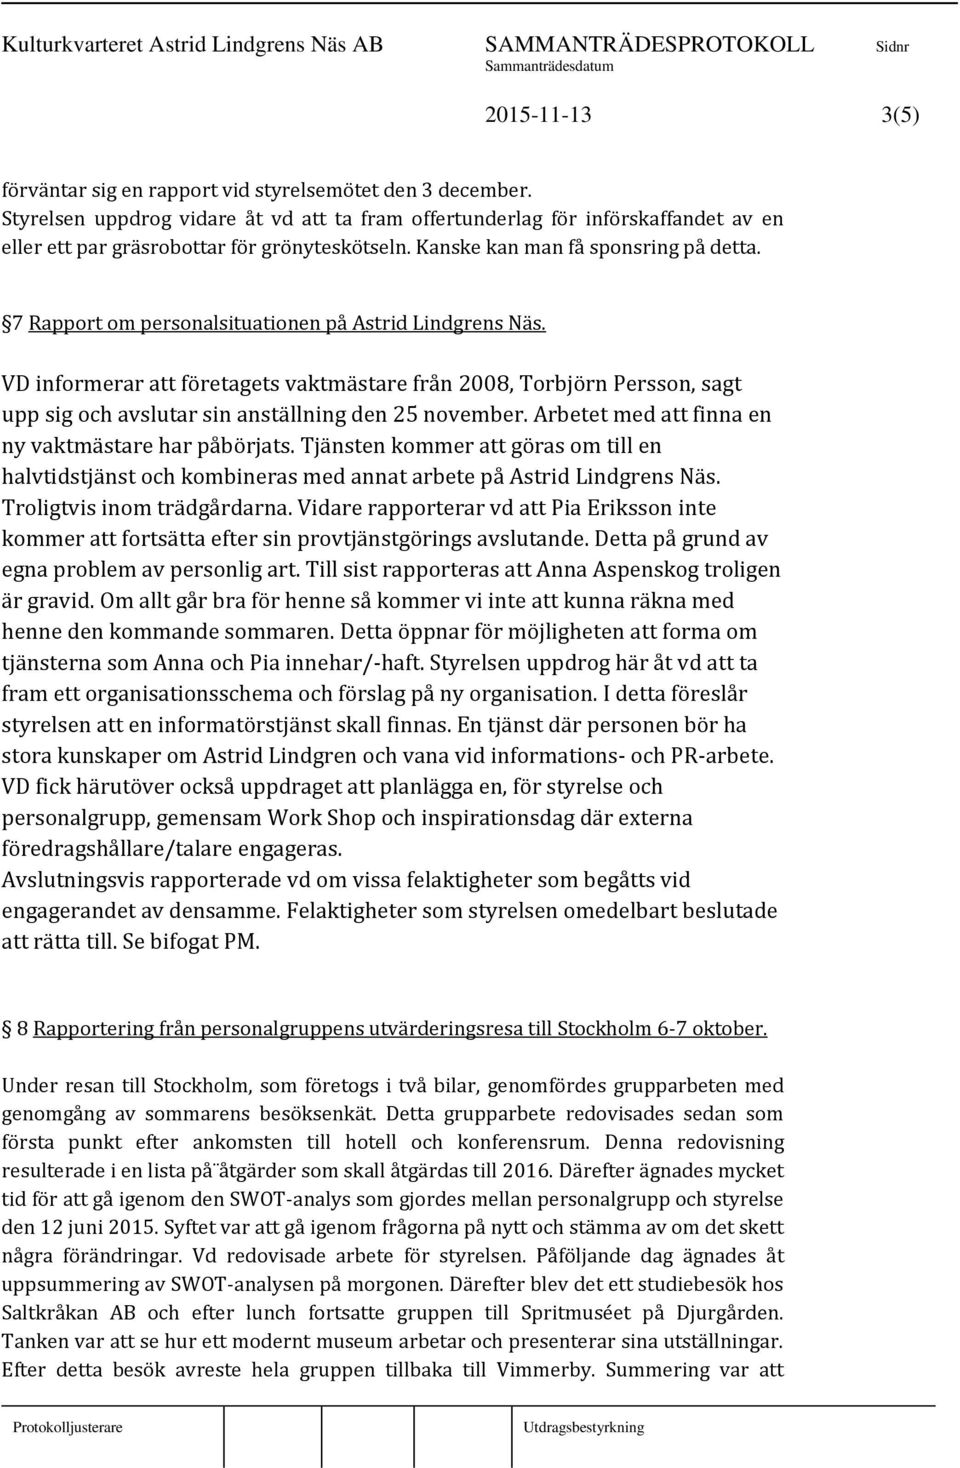 7 Rapport om personalsituationen på Astrid Lindgrens Näs. VD informerar att företagets vaktmästare från 2008, Torbjörn Persson, sagt upp sig och avslutar sin anställning den 25 november.